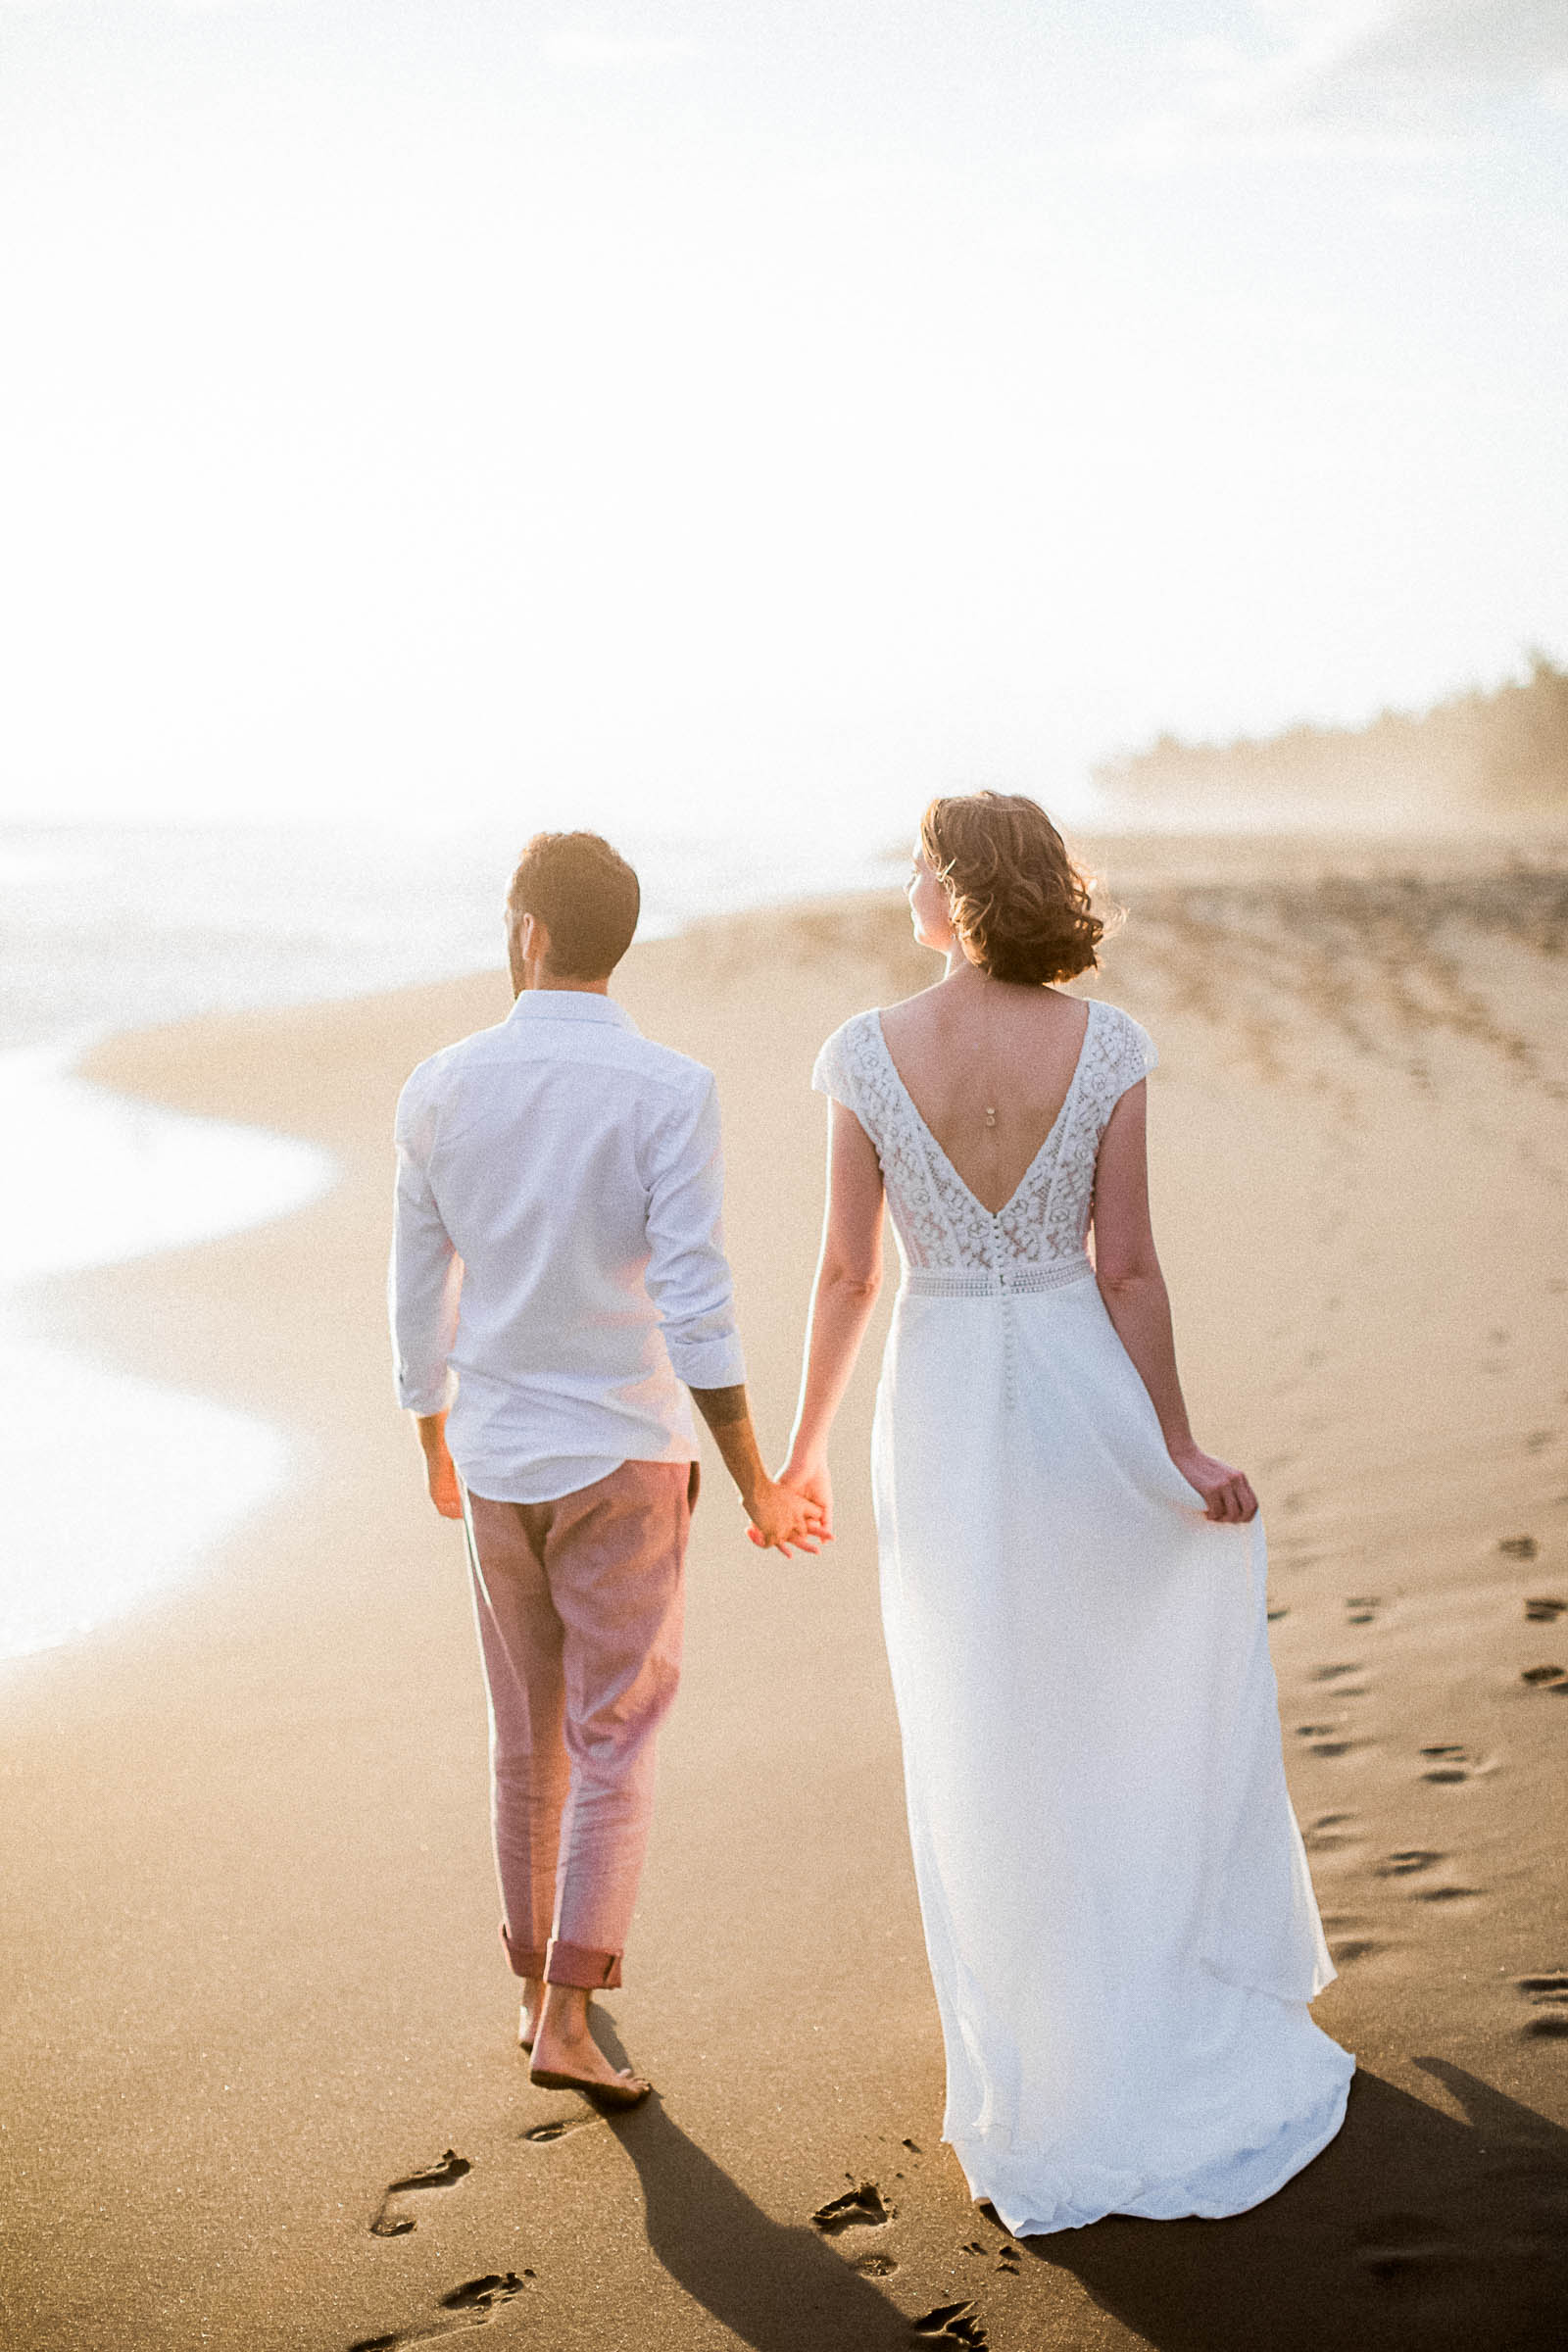 Photographie de Mathieu Dété, photographe de mariage sur l'île de la Réunion et dans l'Océan Indien, présentant un couple qui marche sur la plage à Etang-Salé-les-Bains, au coucher du soleil